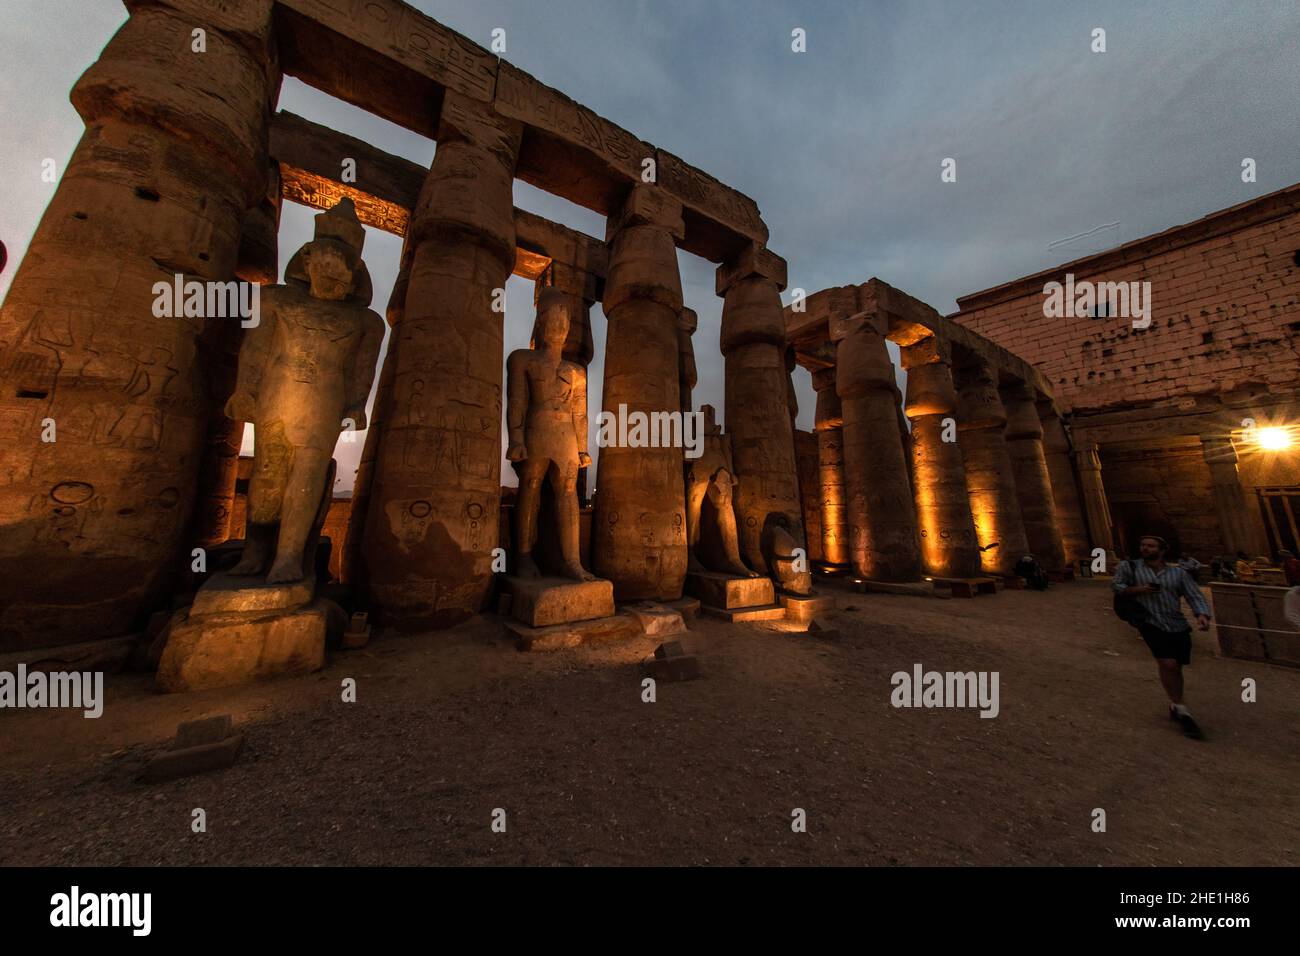 Statuen und Säulen im Luxor-Tempel in Ägypten, die am Abend durch Lichter beleuchtet werden, wenn die Dunkelheit fällt, was einen wunderschönen und dramatischen Effekt bewirkt. Stockfoto